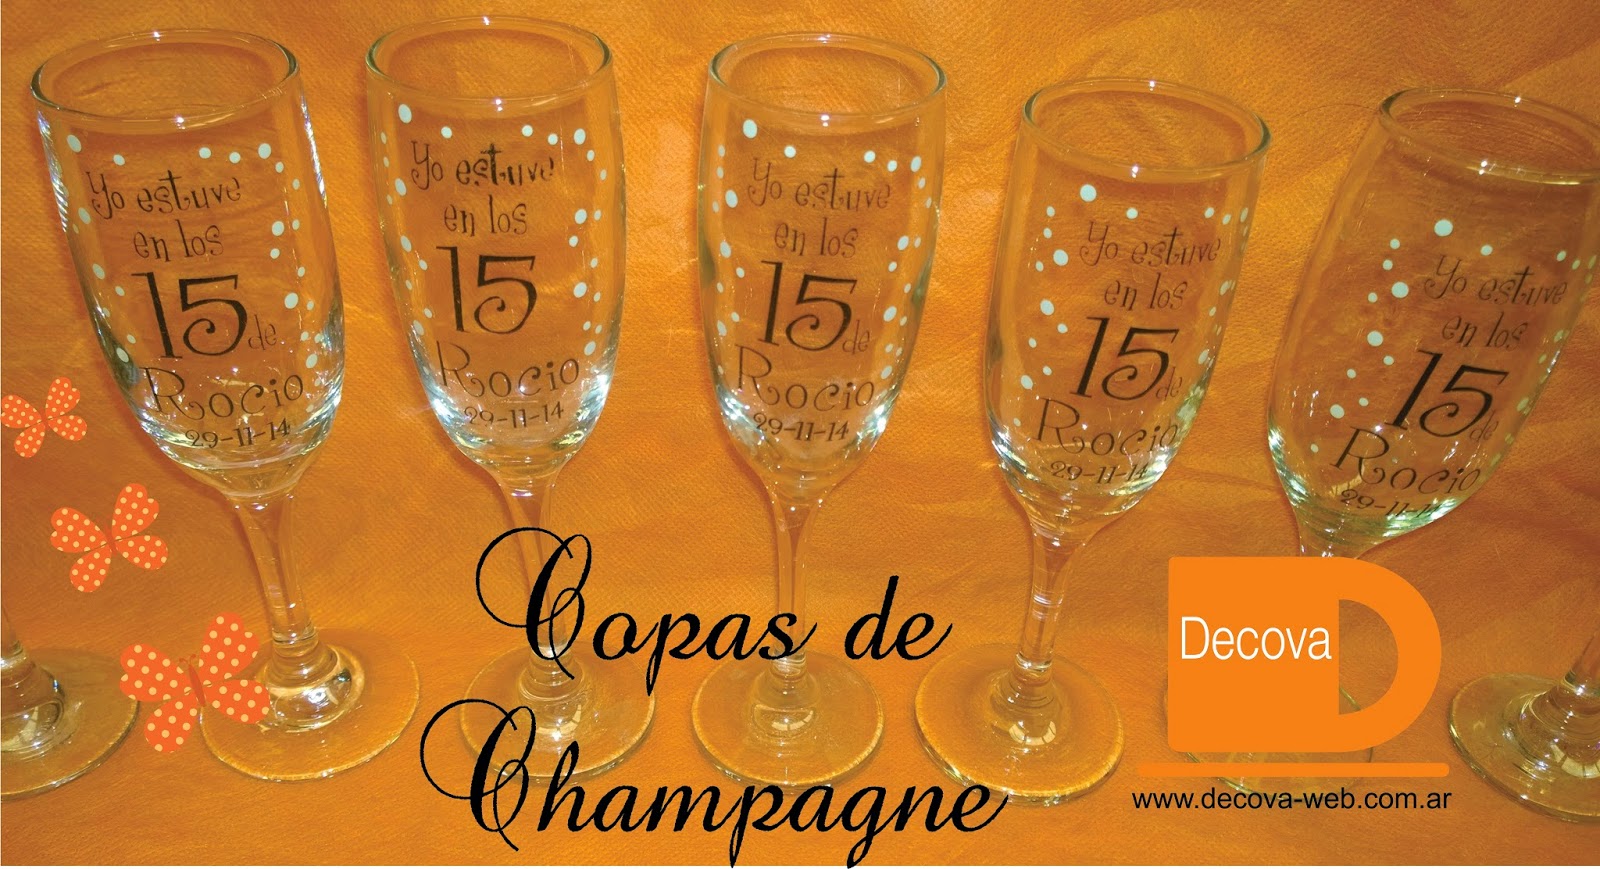 rociar mucho Desafortunadamente SOUVENIRS, TAZAS PERSONALIZADAS!!!: Souvenirs 15 años, Copas de champagne